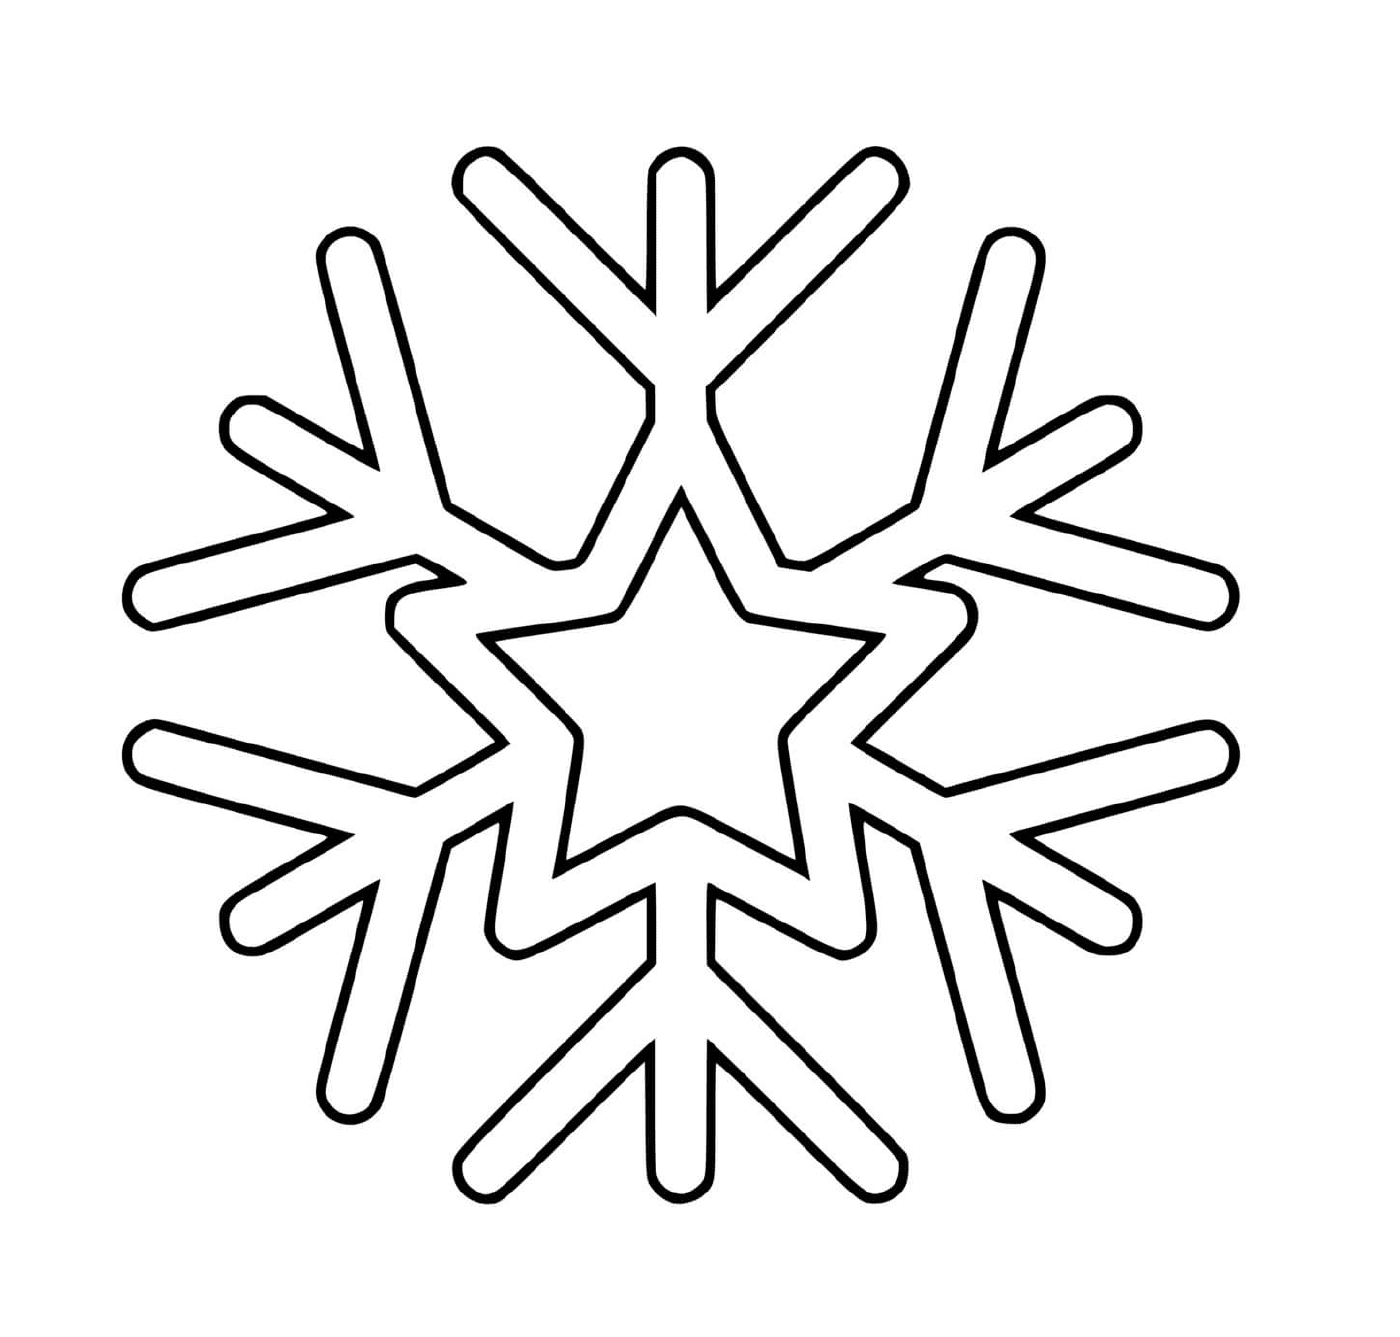  Un copo de nieve con una estrella 